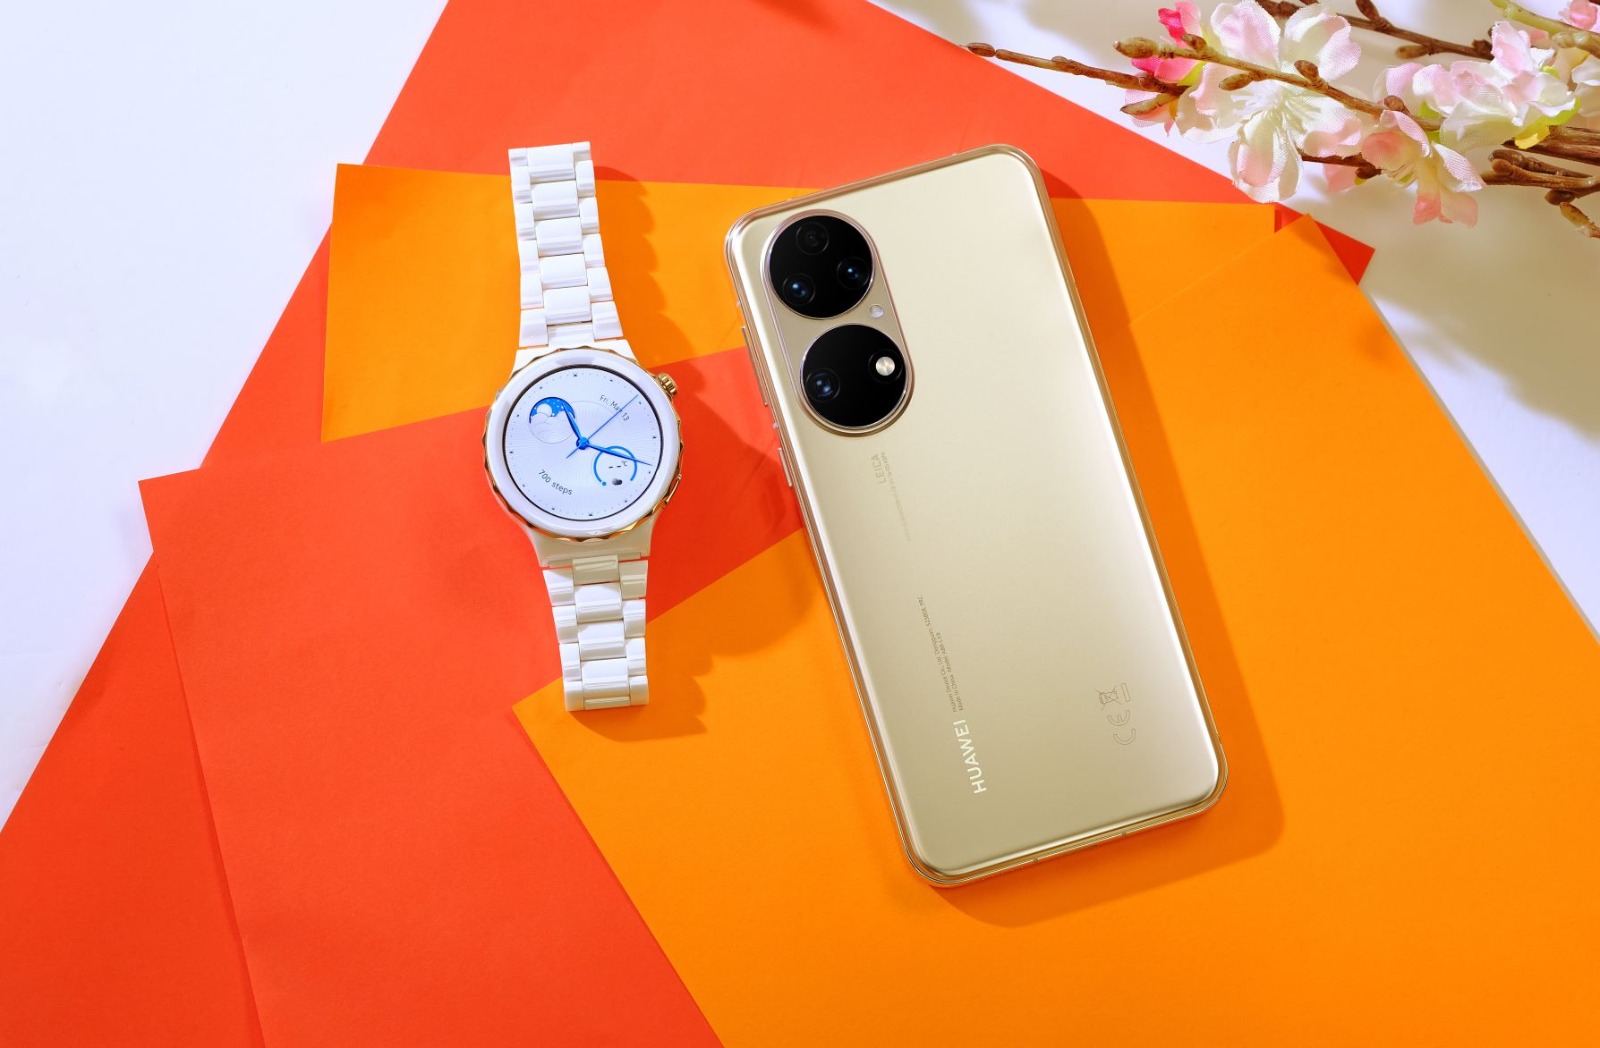  ثلاثة أسباب تجعلنا نحب هاتف huawei p50 الجديد - أفضل هاتف مزود بكاميرا بتصميم جمالي وساعة huawei watch gt 3 pro - الساعة الرائعة والأنيقة والدائمة!